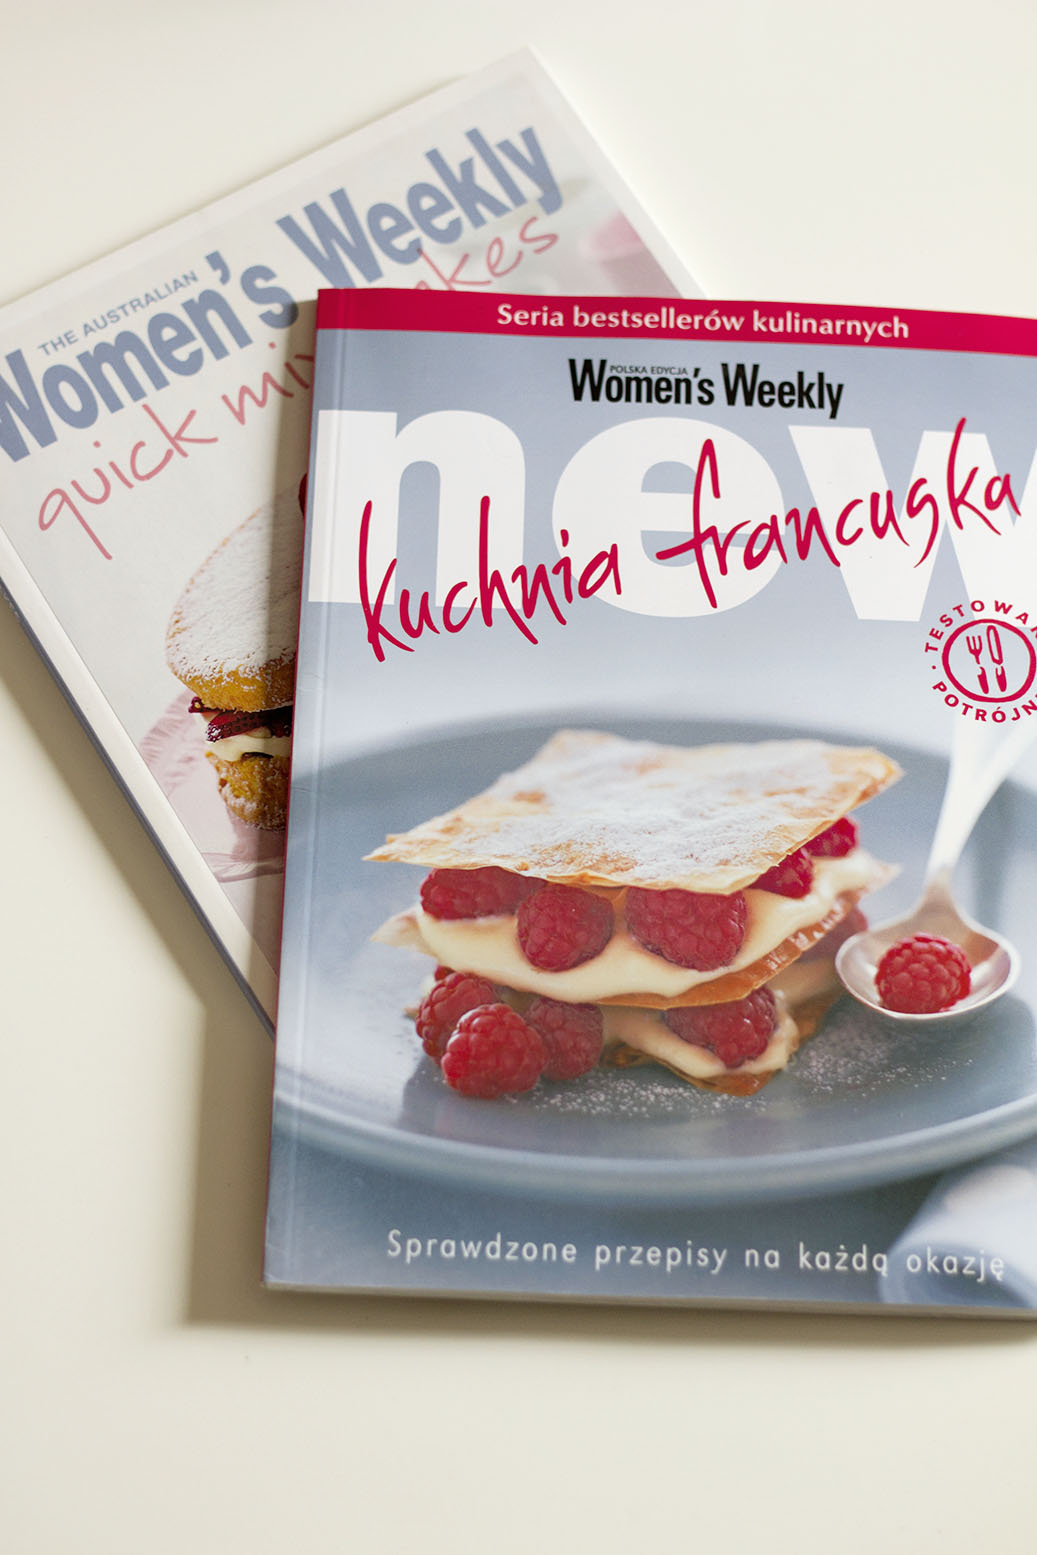 Kuchnia francuska - polska edycja Women's Weekly